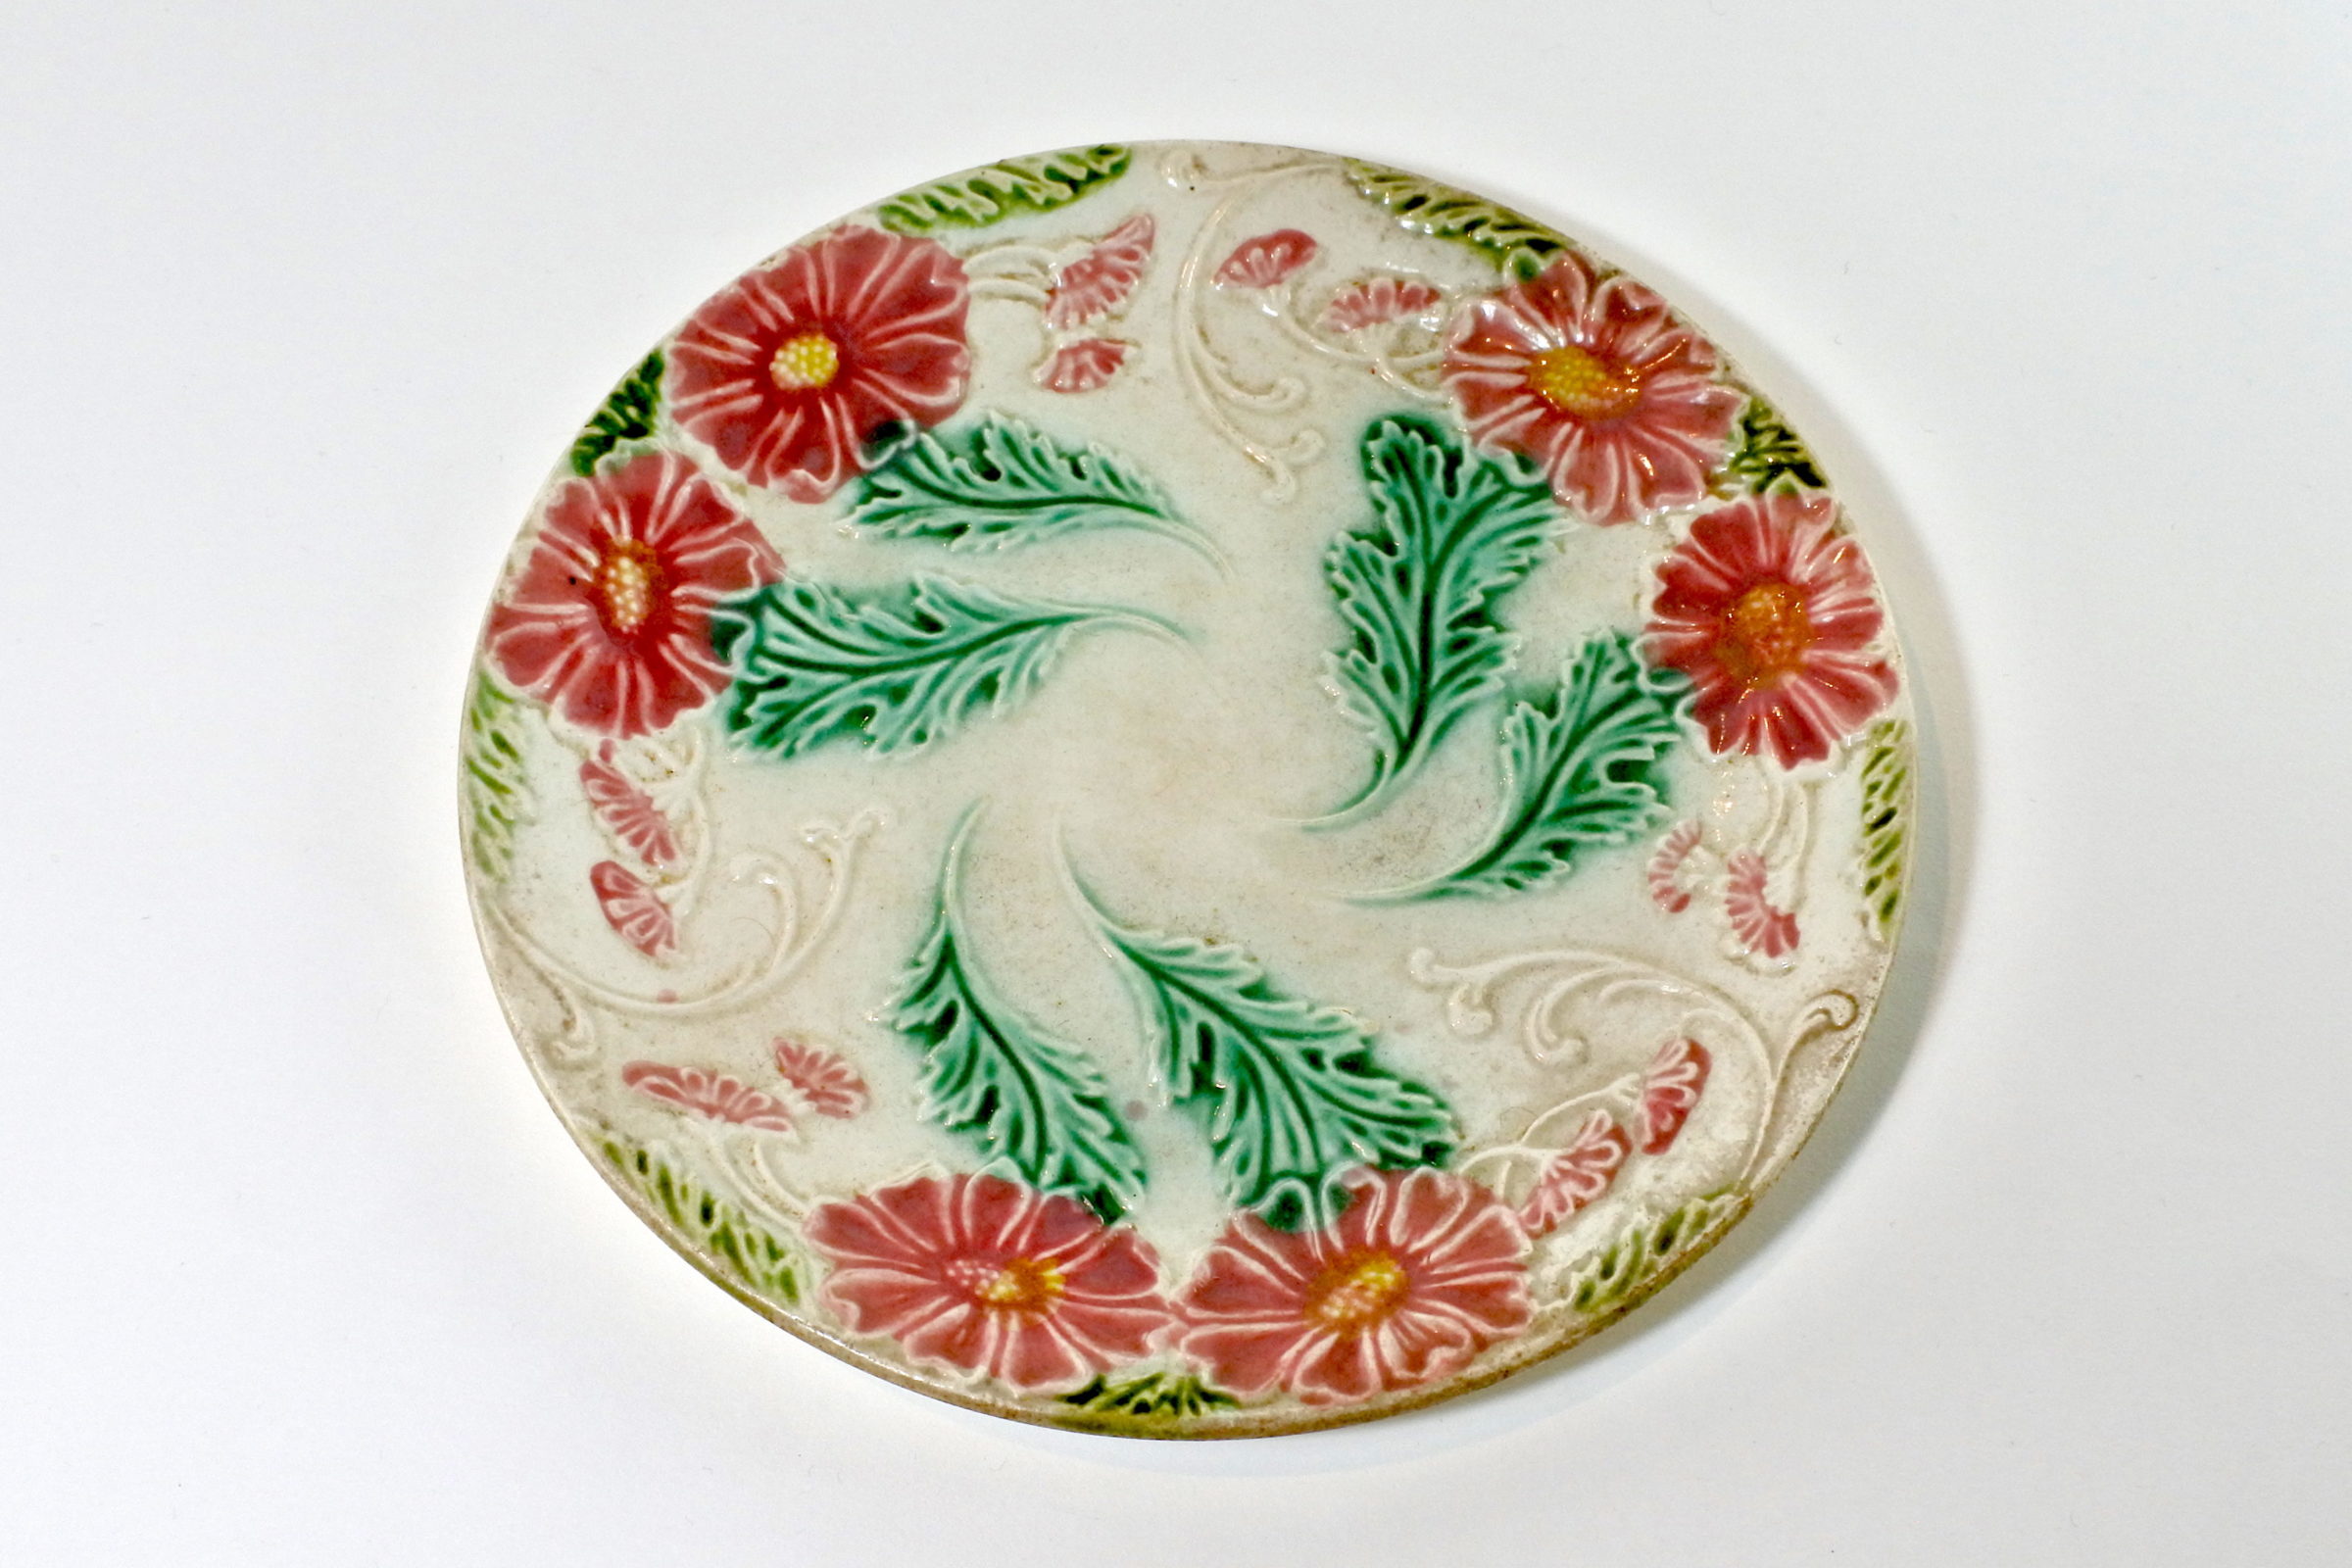 Piatto in ceramica barbotine con margherite rosse